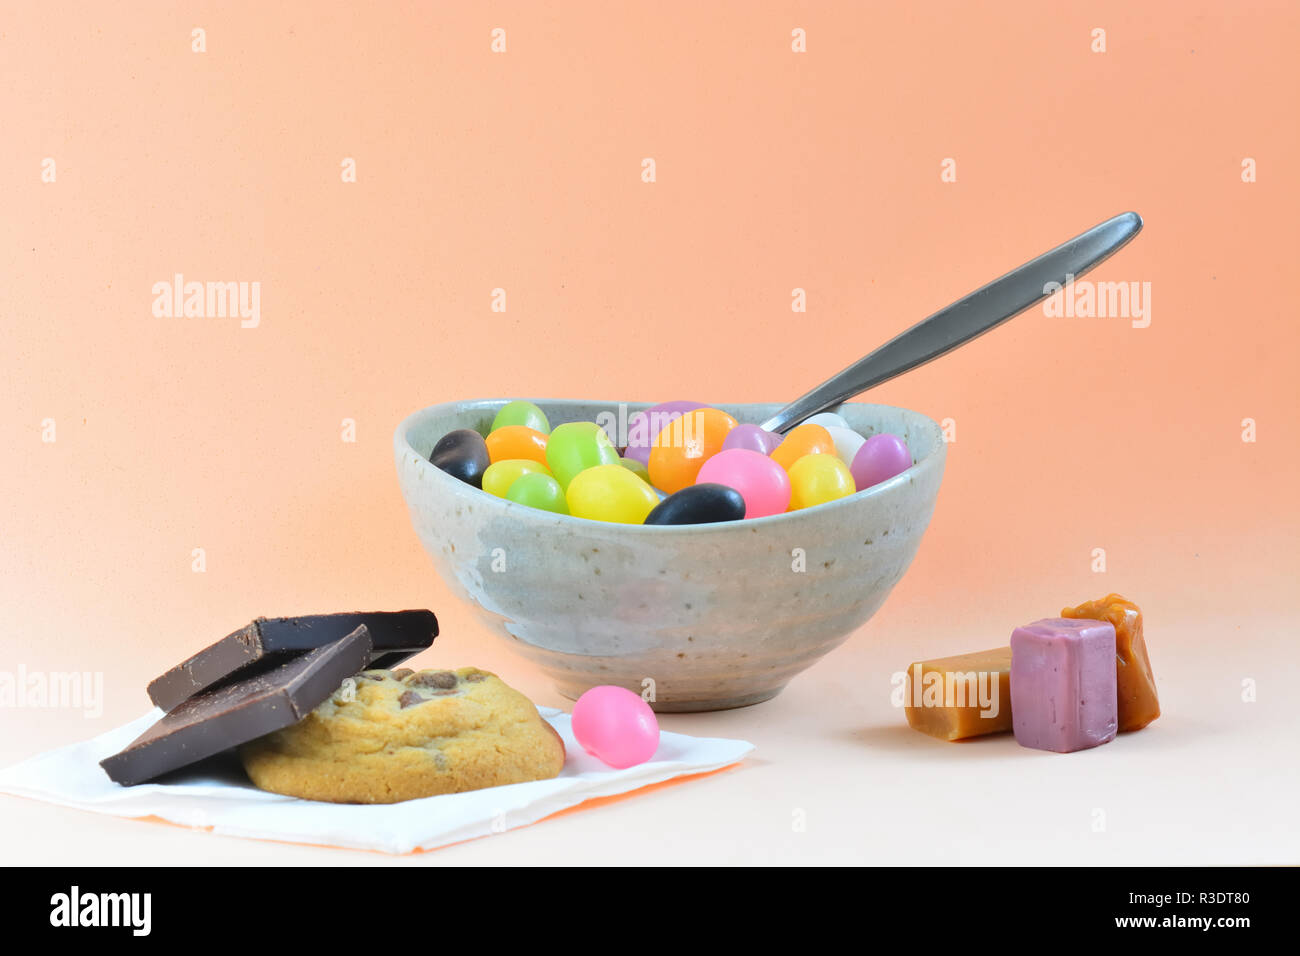 Une photo en gros plan d'un repas composé de quelques haricots jelly mixte, bonbons et biscuits. Concept de mauvaise alimentation Banque D'Images